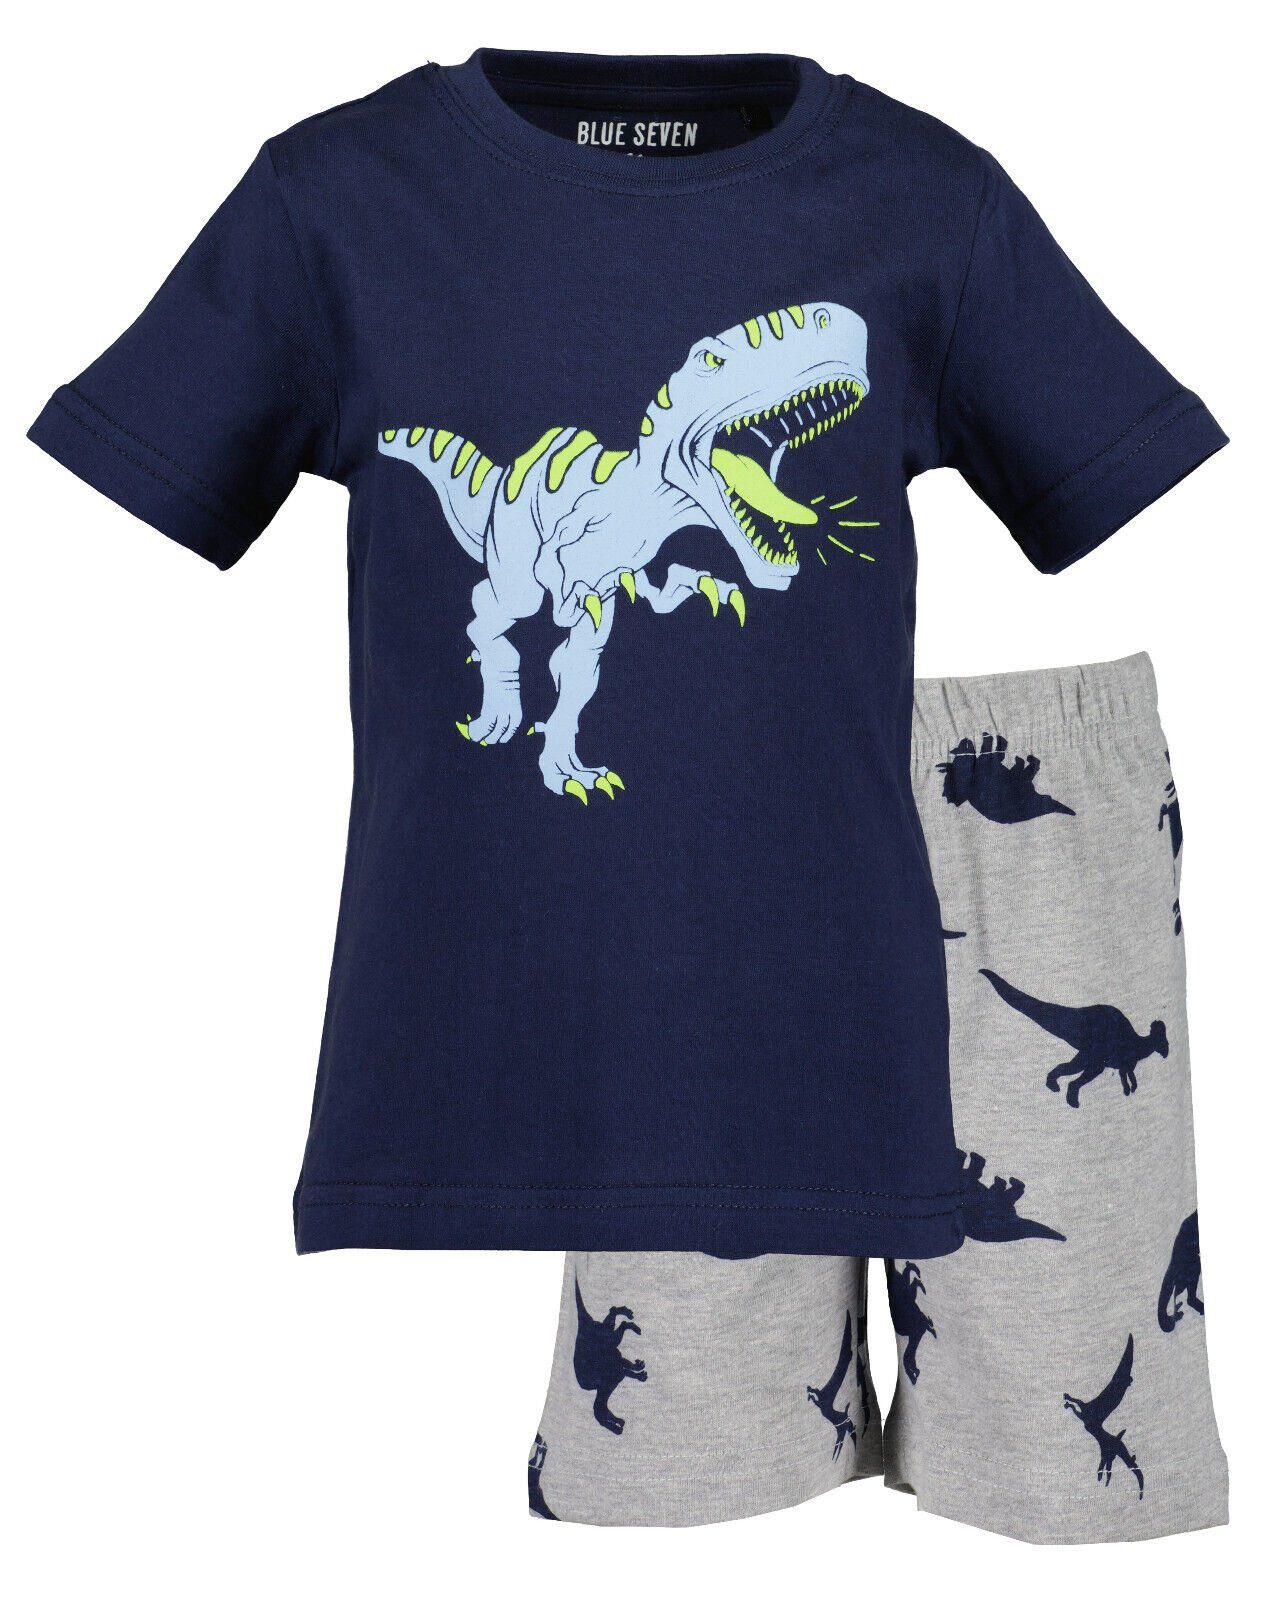 Blue Schlafanzug Jungen Pyjama Schlafanzug Seven® Dinos Seven Blue